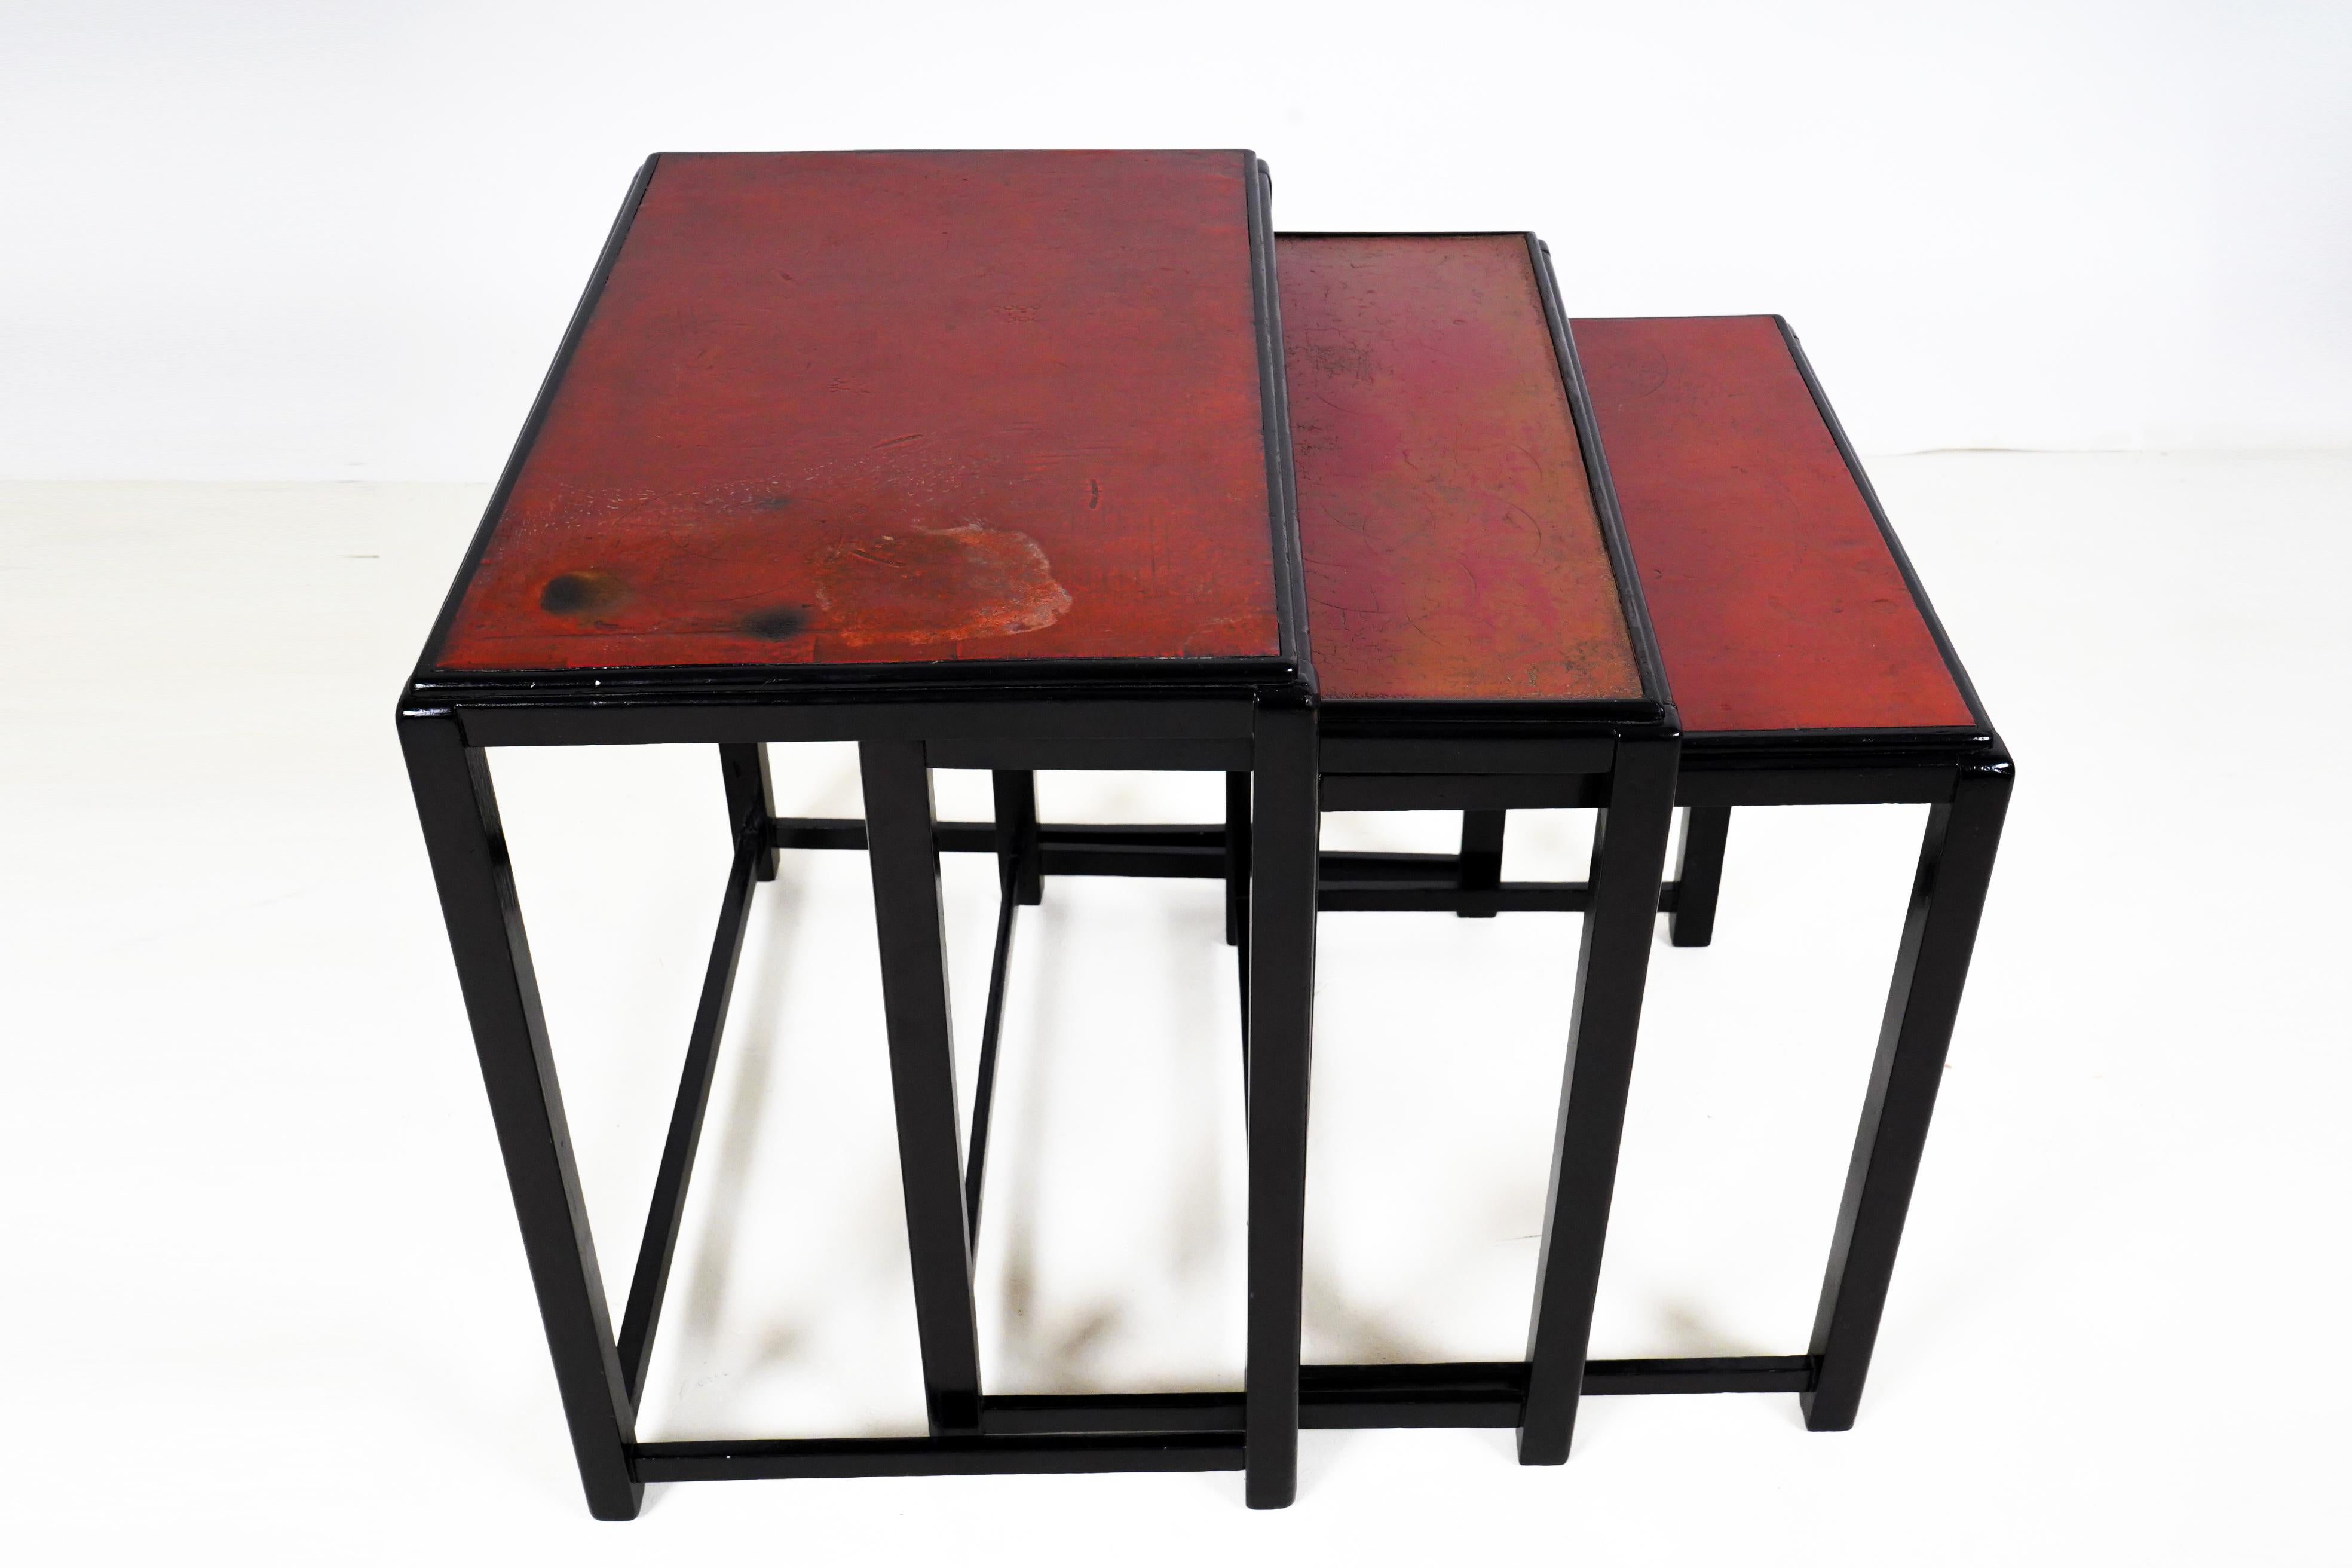 Ein Satz von drei Bauhaus-inspirierten ungarischen Art Deco Beistelltischen. Diese Tische sind ebenso schön wie praktisch. Die massiven Nussbaumrahmen wurden dunkel, fast schwarz, französisch poliert. Ihre Oberseiten sind rot lackiert und wurden